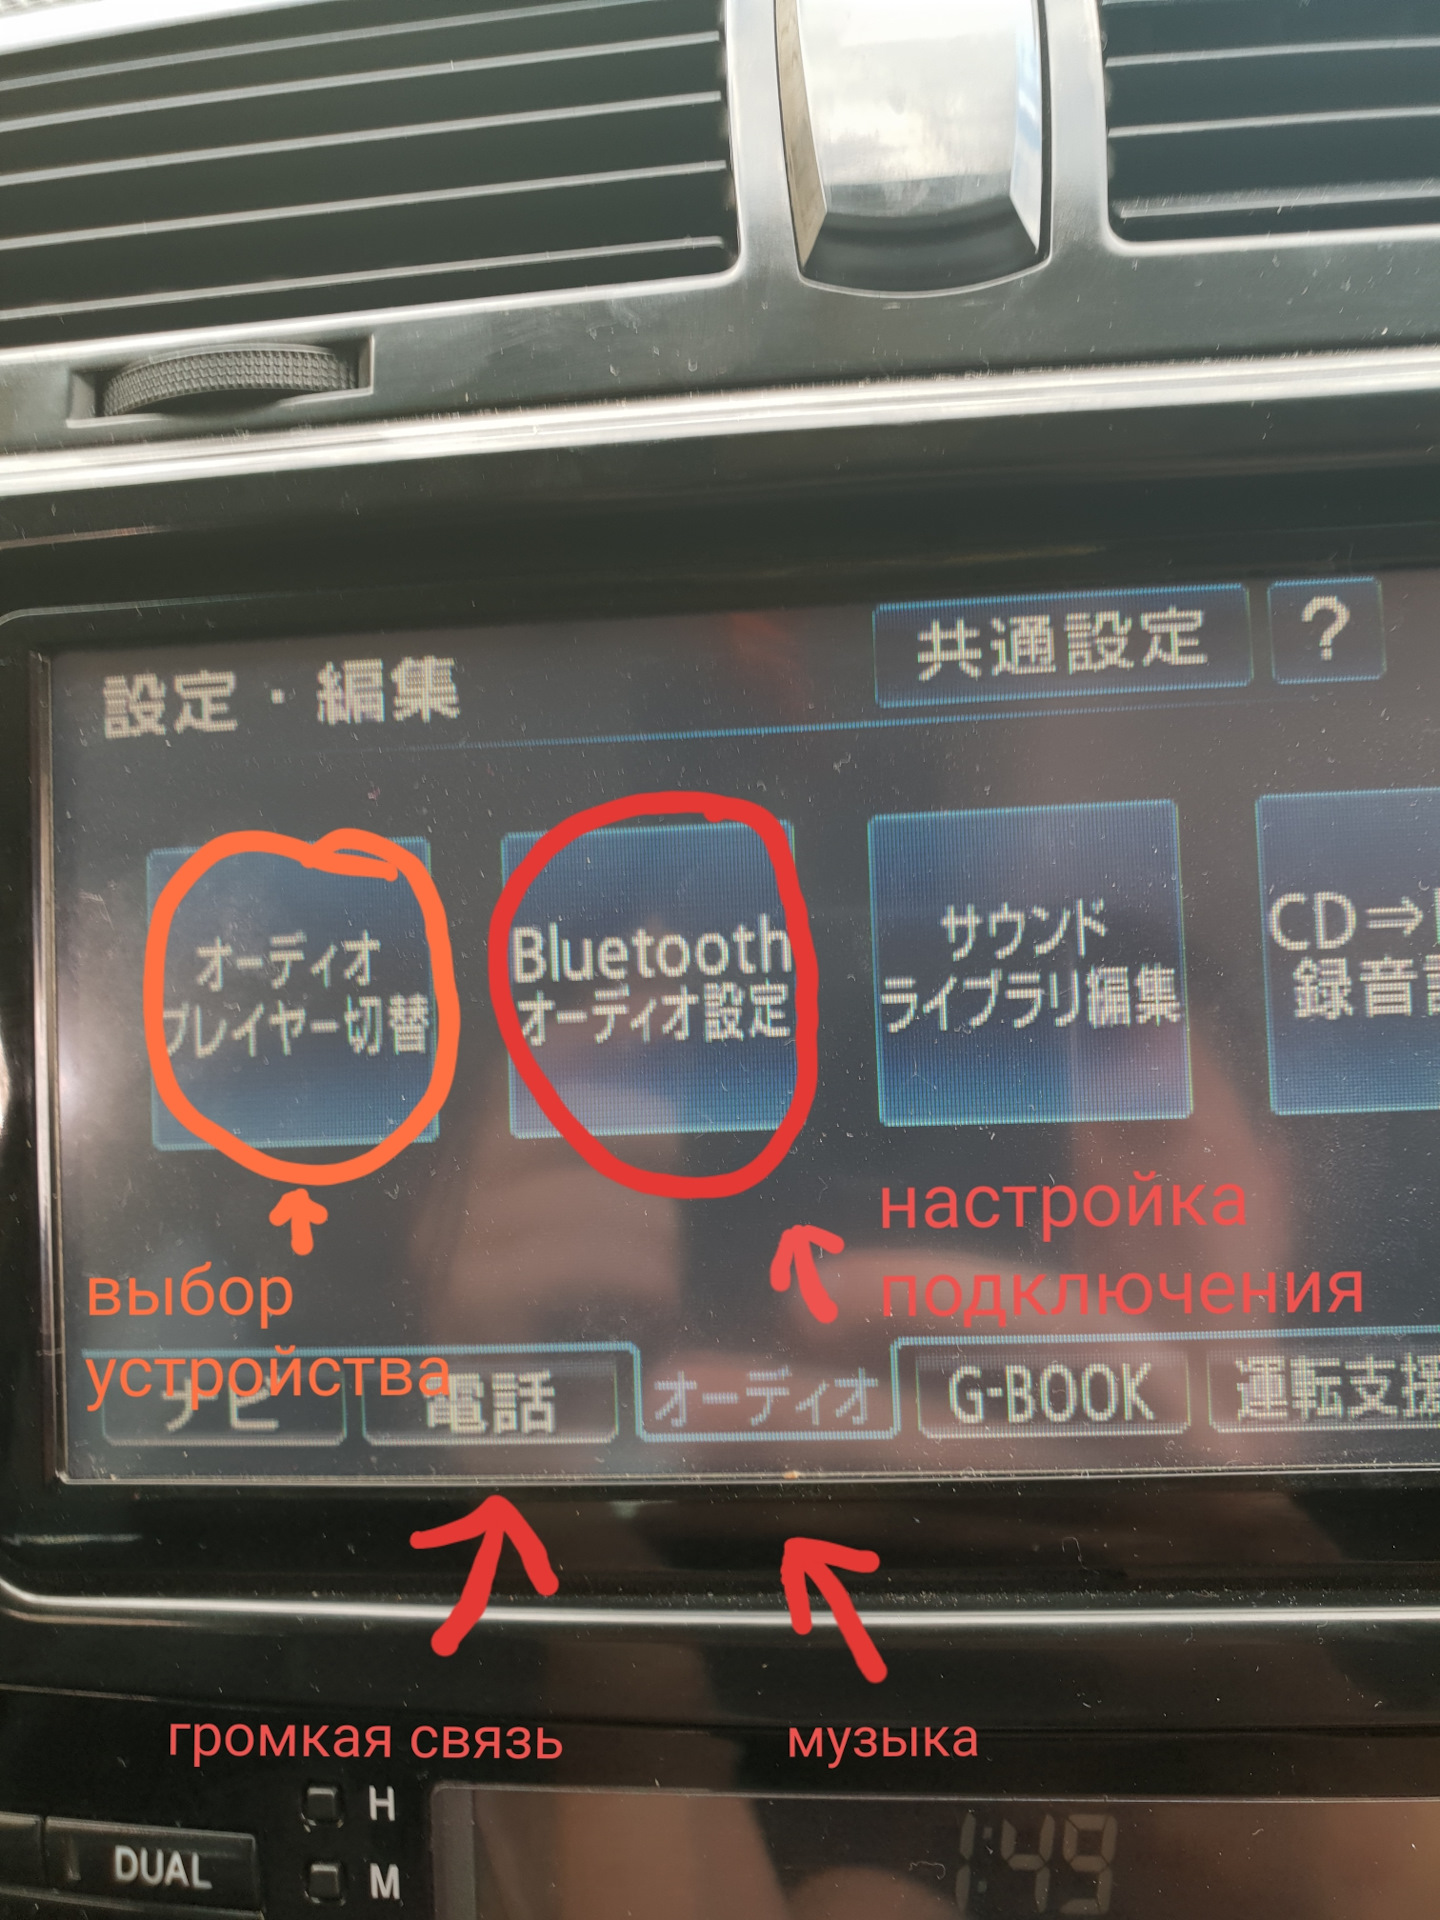 Язык магнитофона. Тойота NHDT-w58. Магнитола Toyota NHZT-w58. Блютуз японская автомагнитола w59g. NHDT-w58g|NHDT-w58.